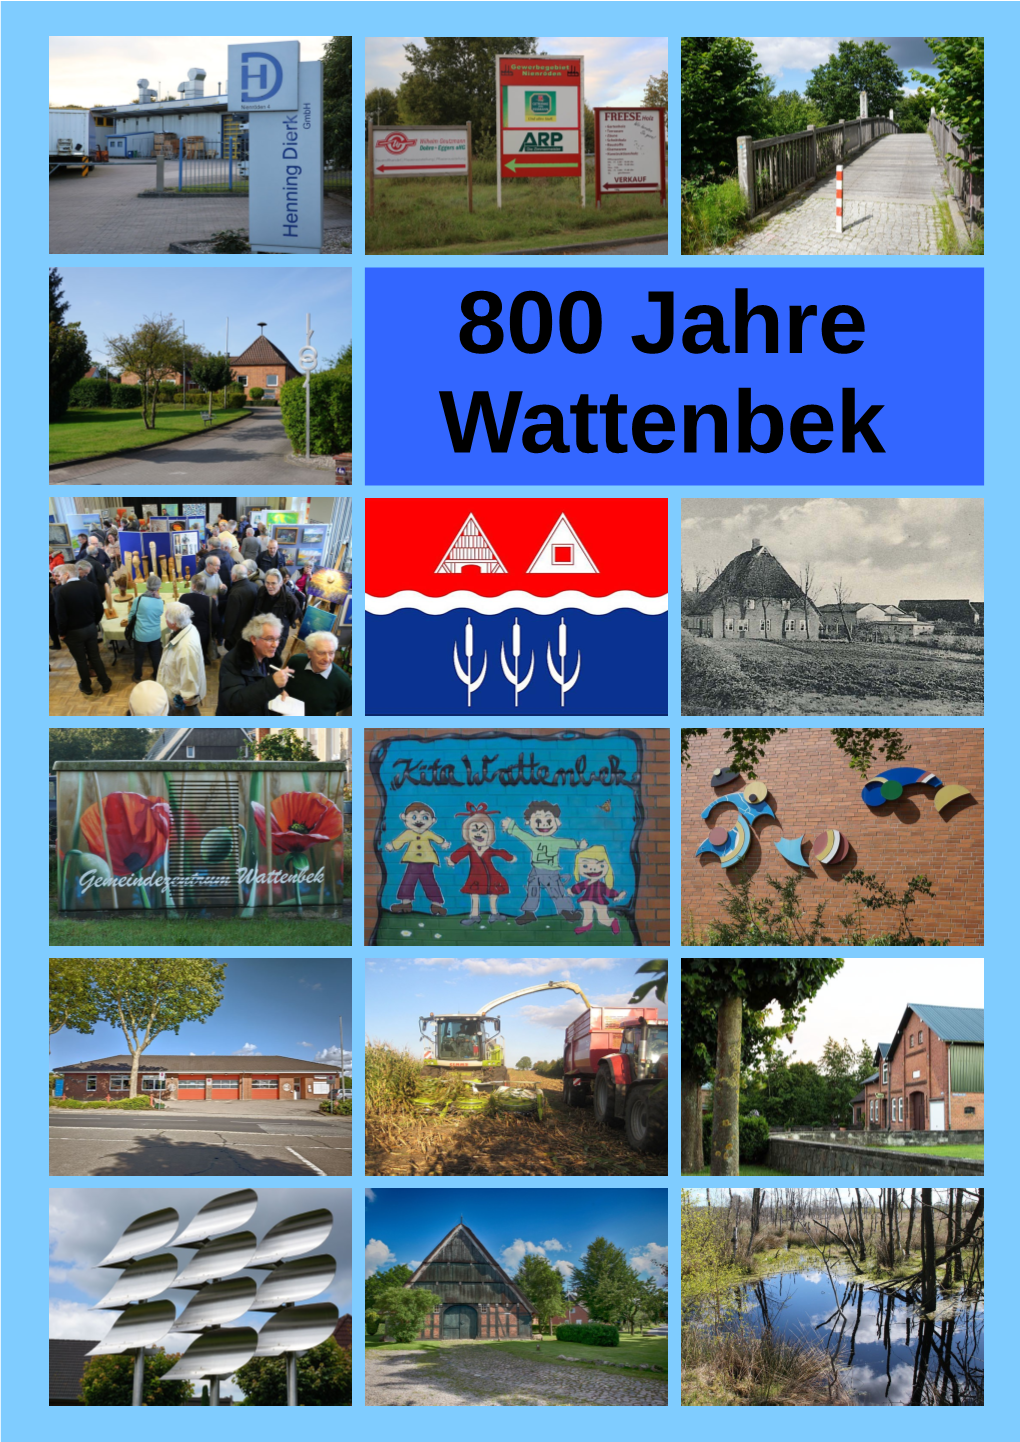 800 Jahre Wattenbek 800 Jahre - Vorwort Im Jahr 1220 Wurde Wattenbek Erstmals in Einem Dokument Erwähnt